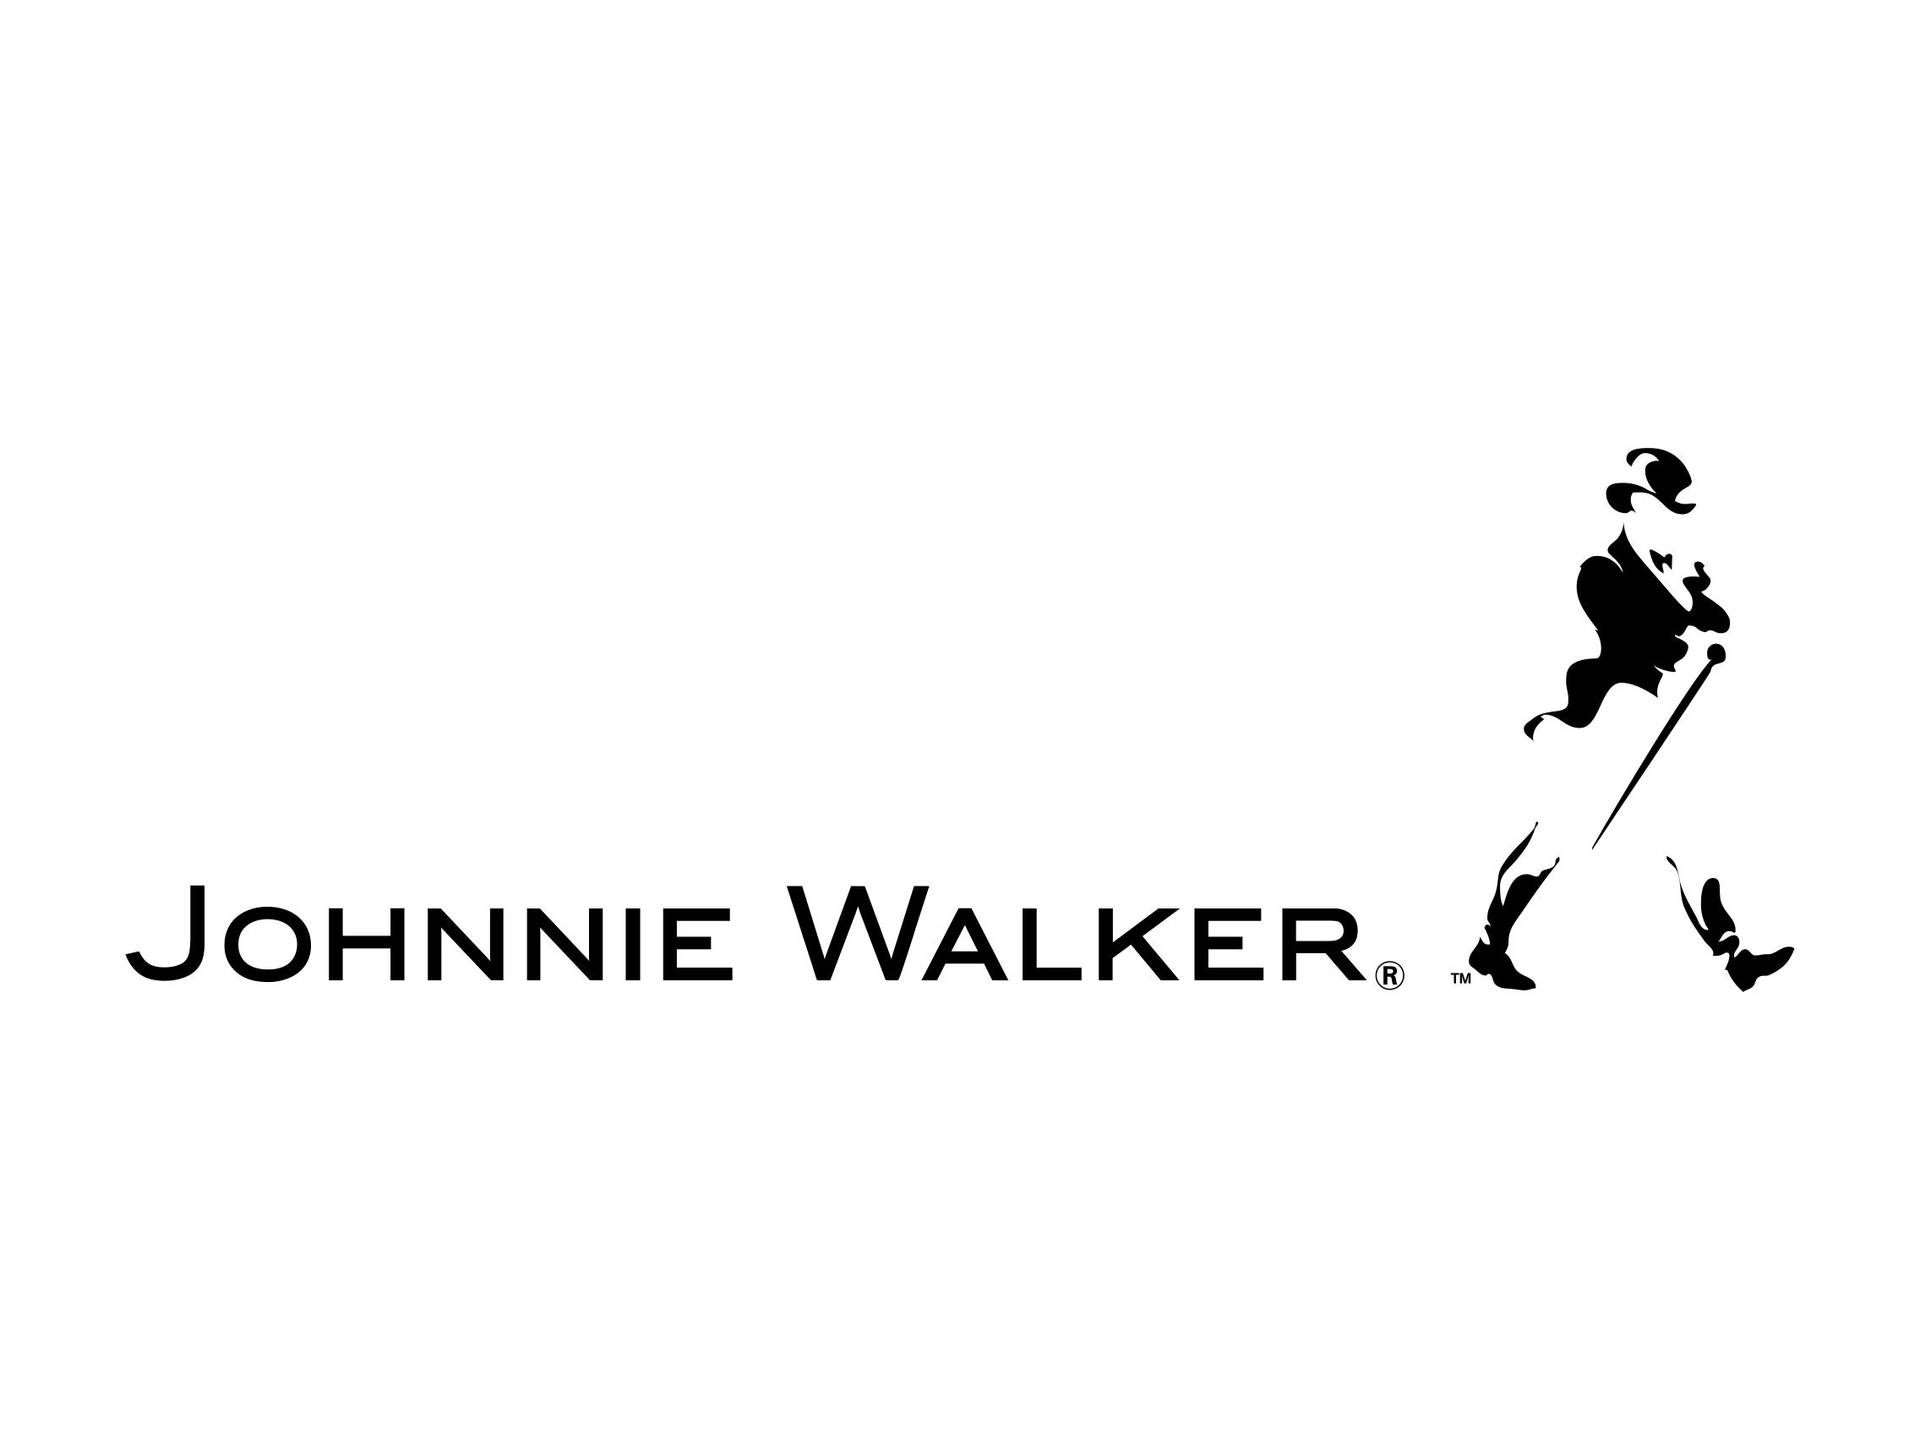 Vis kun Johnnie Walker Brand Logo på væggen. Wallpaper